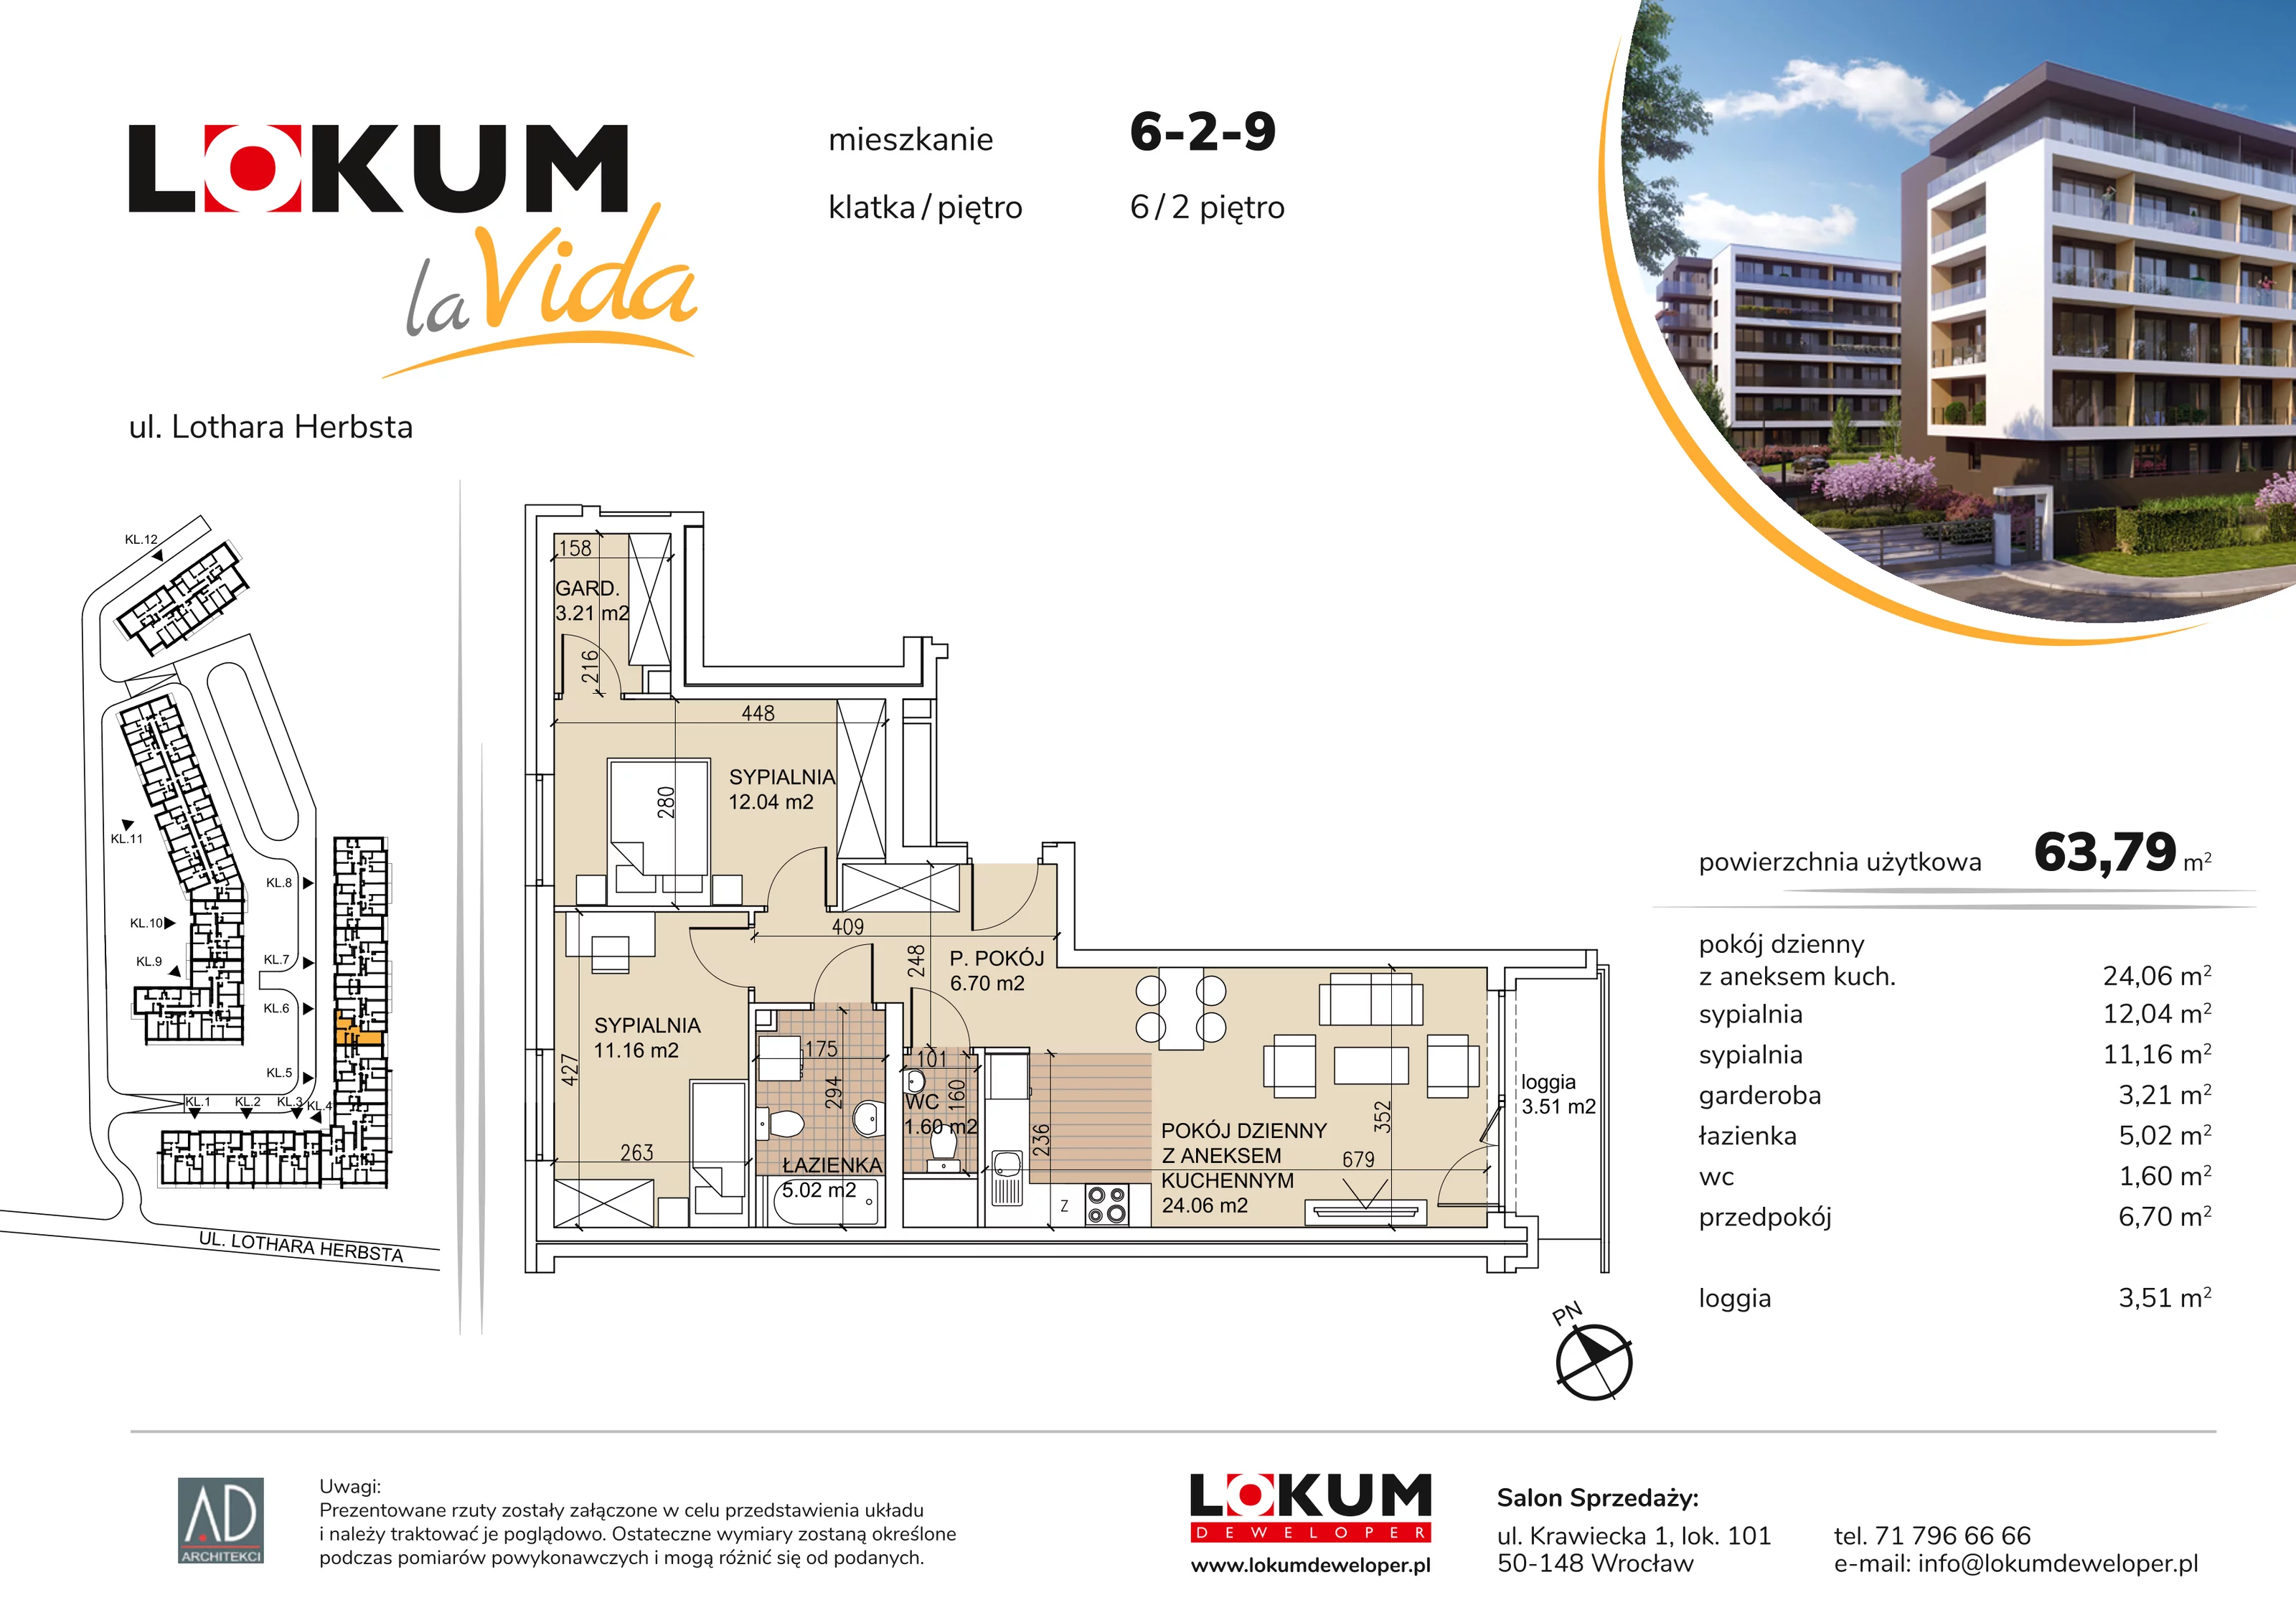 Mieszkanie 63,79 m², piętro 2, oferta nr 6-2-9, Lokum la Vida, Wrocław, Sołtysowice, ul. Lothara Herbsta